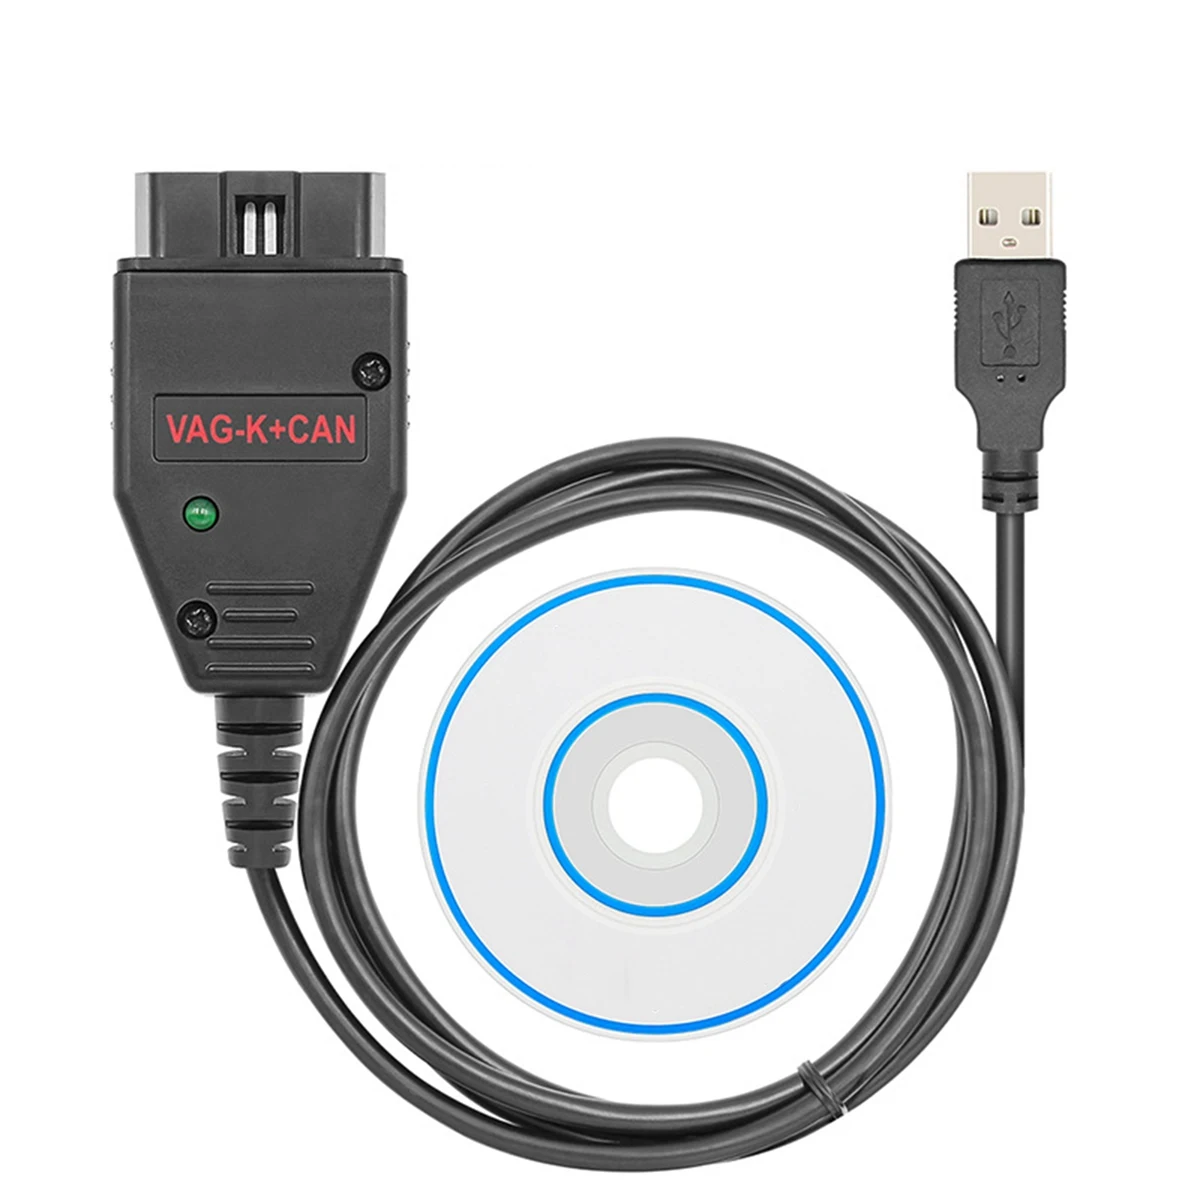 

VAG K+ CAN Commander 1.4 FTDI Chip OBD2 Scanner USB Cable Diagnostic Tool for VW/Audi/Skoda for VAG K-Line Commander